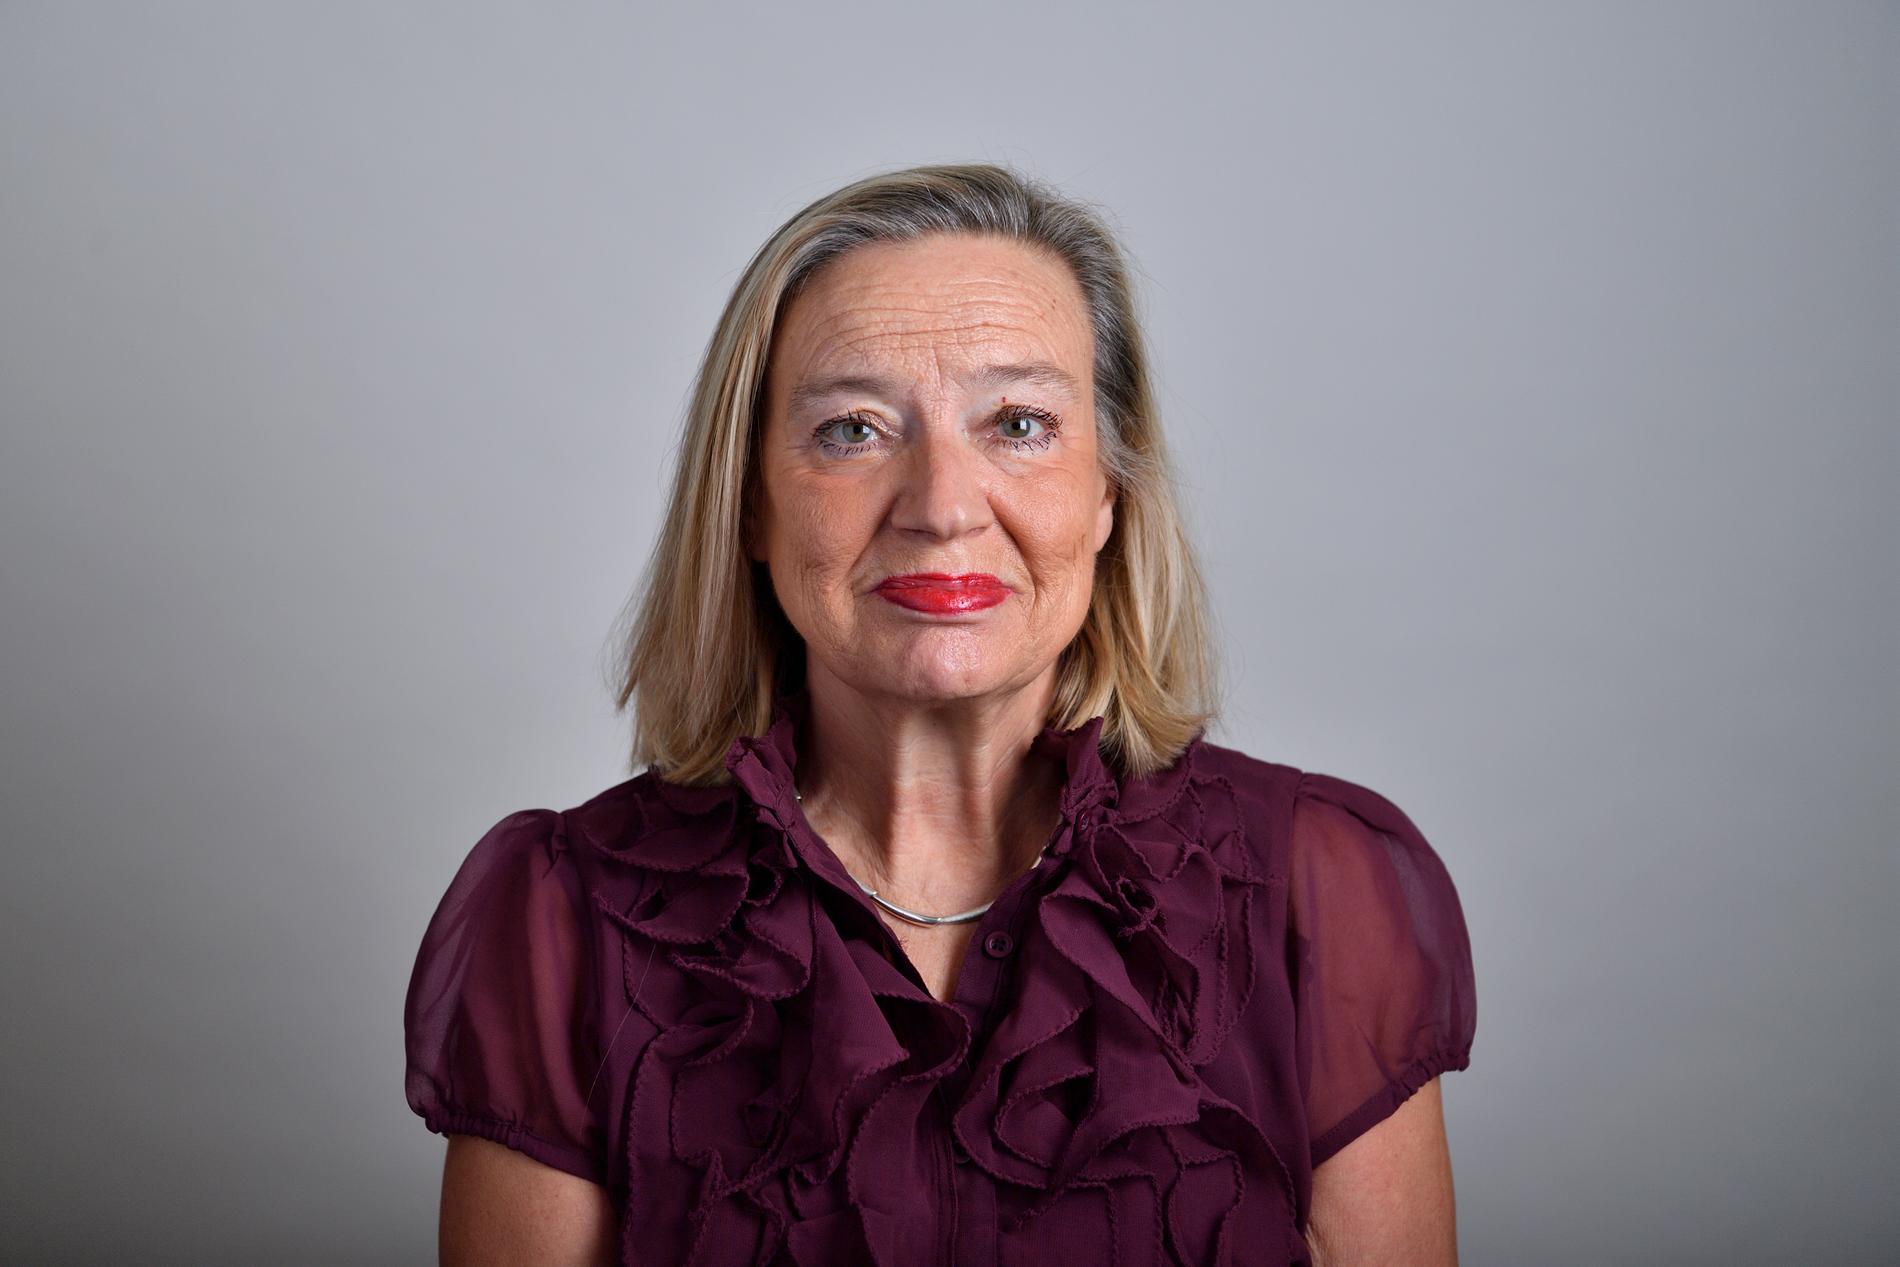  Riksdagsledamoten Karin Rågsjö (V) vill stoppa bonusar i vårdbolag som får statligt stöd - efter Aftonbladets avslöjande. 